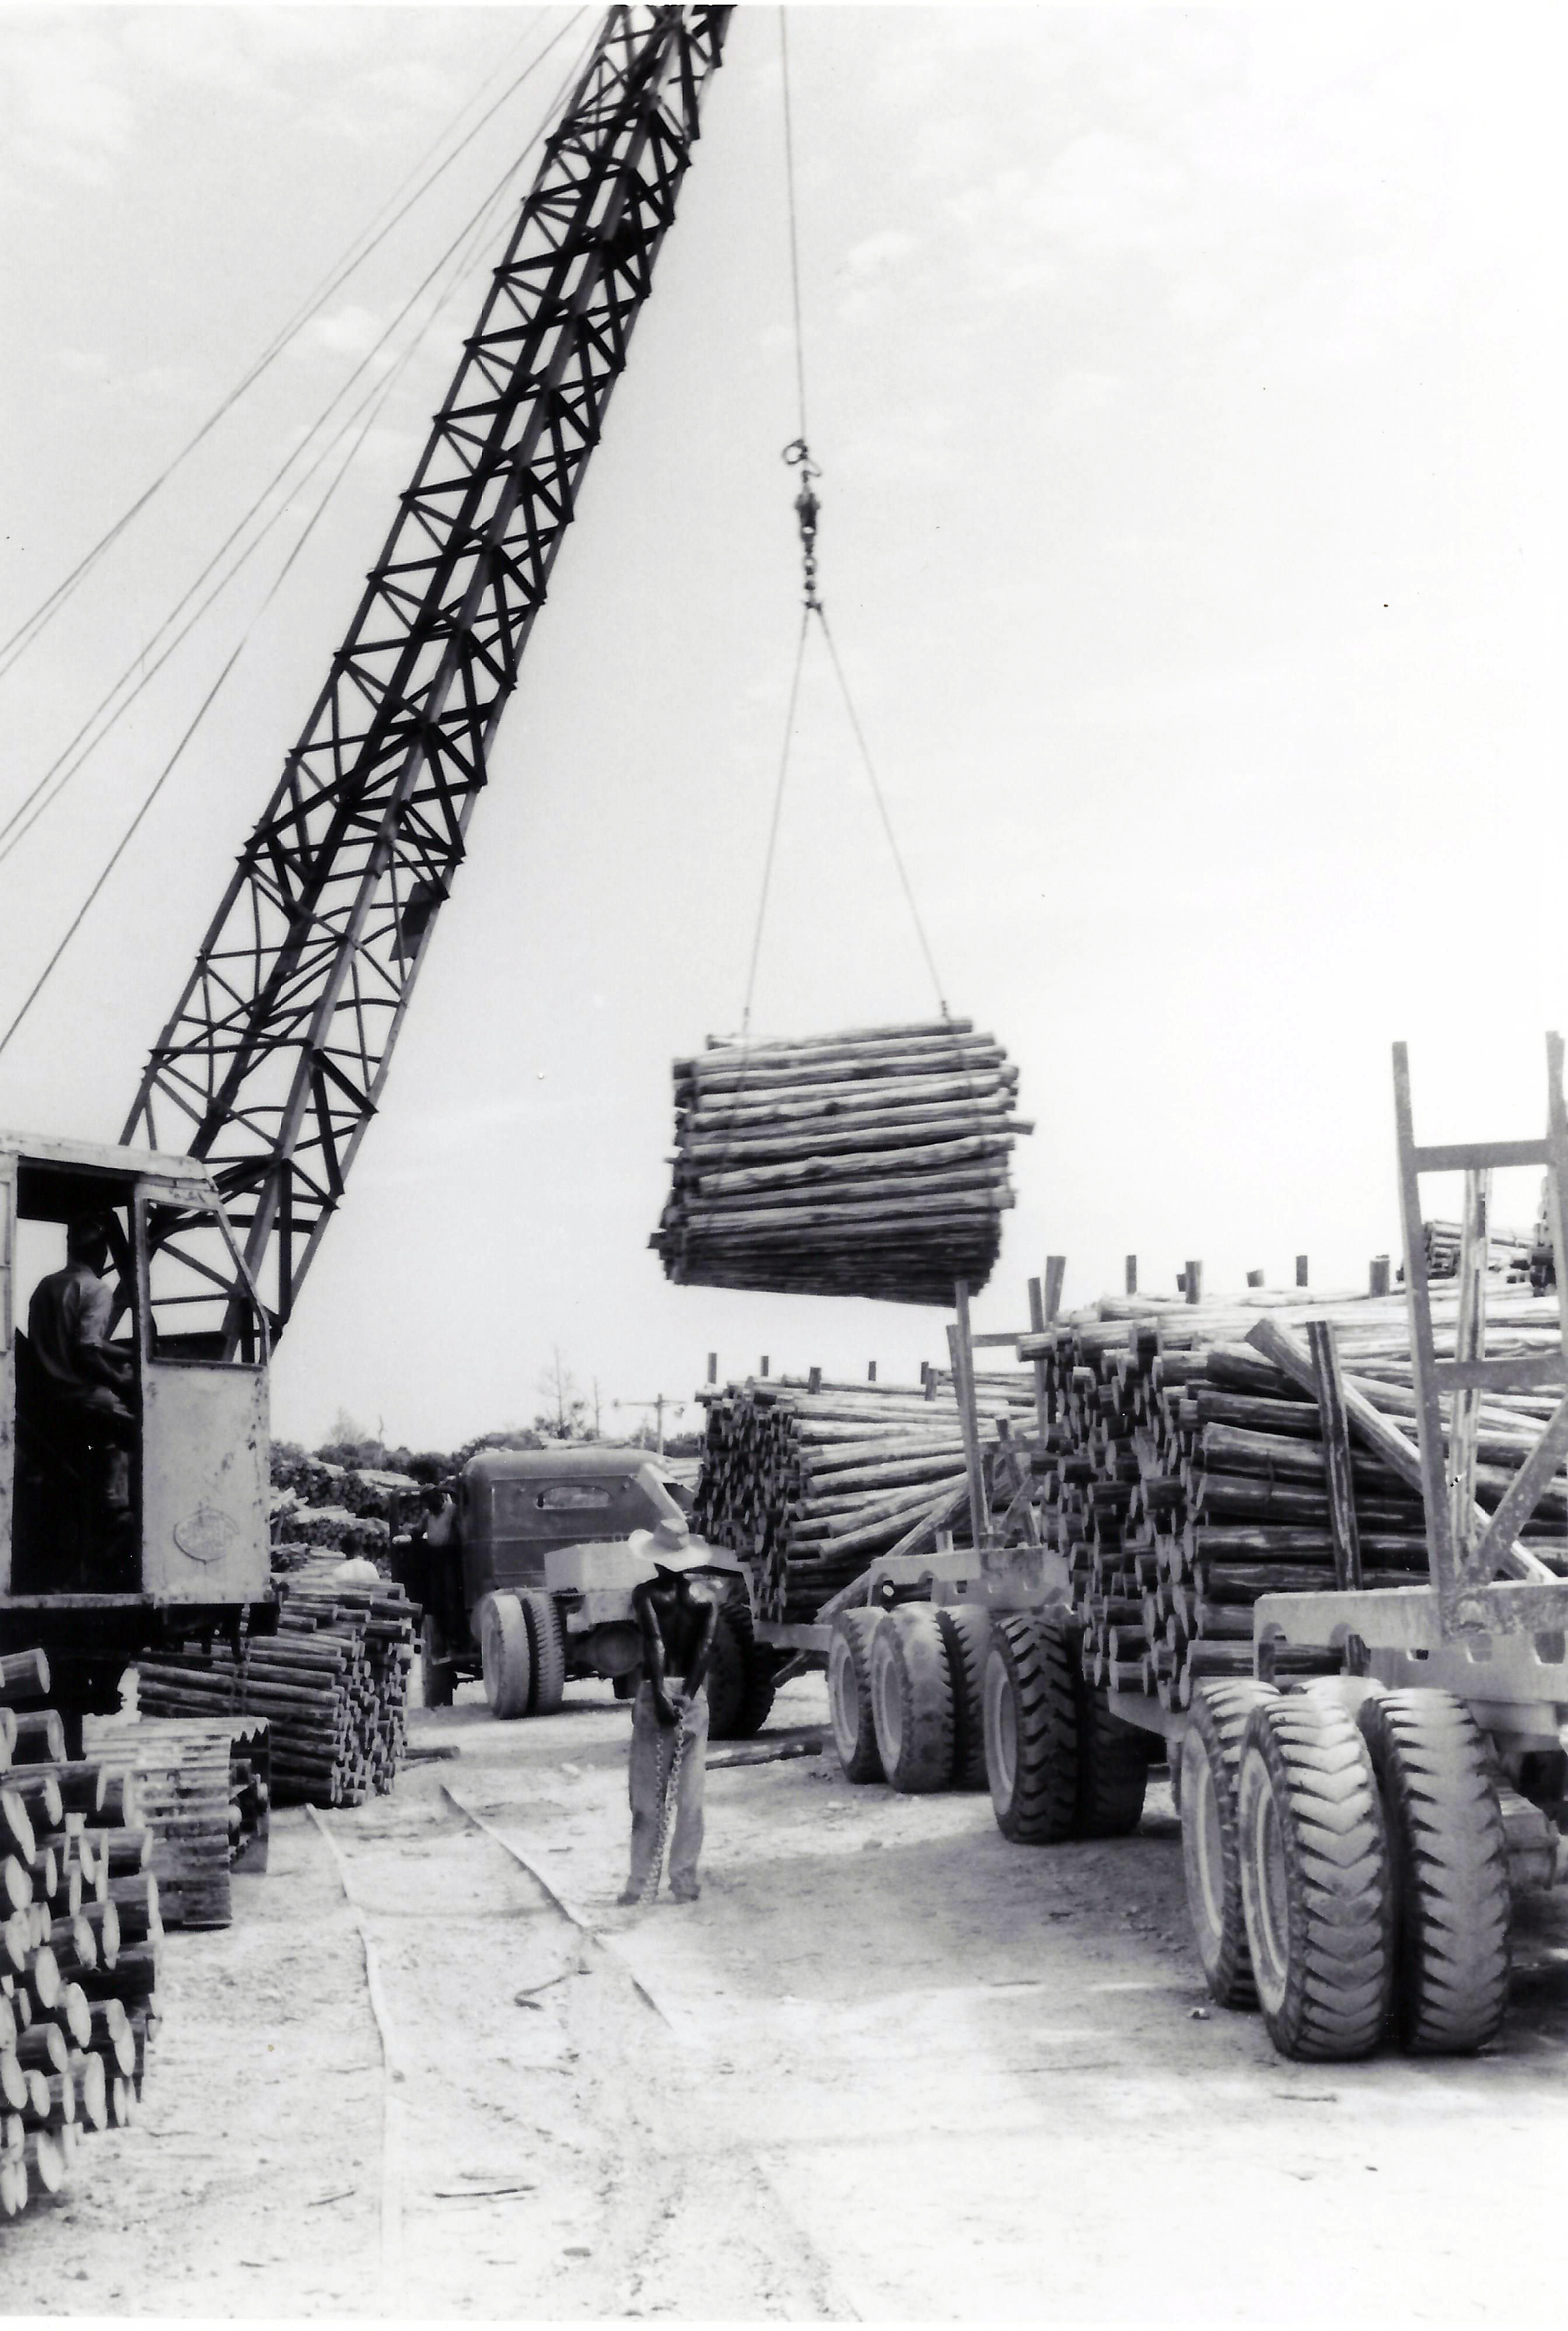 Loading of lumber at Pine Ridge, 1950's